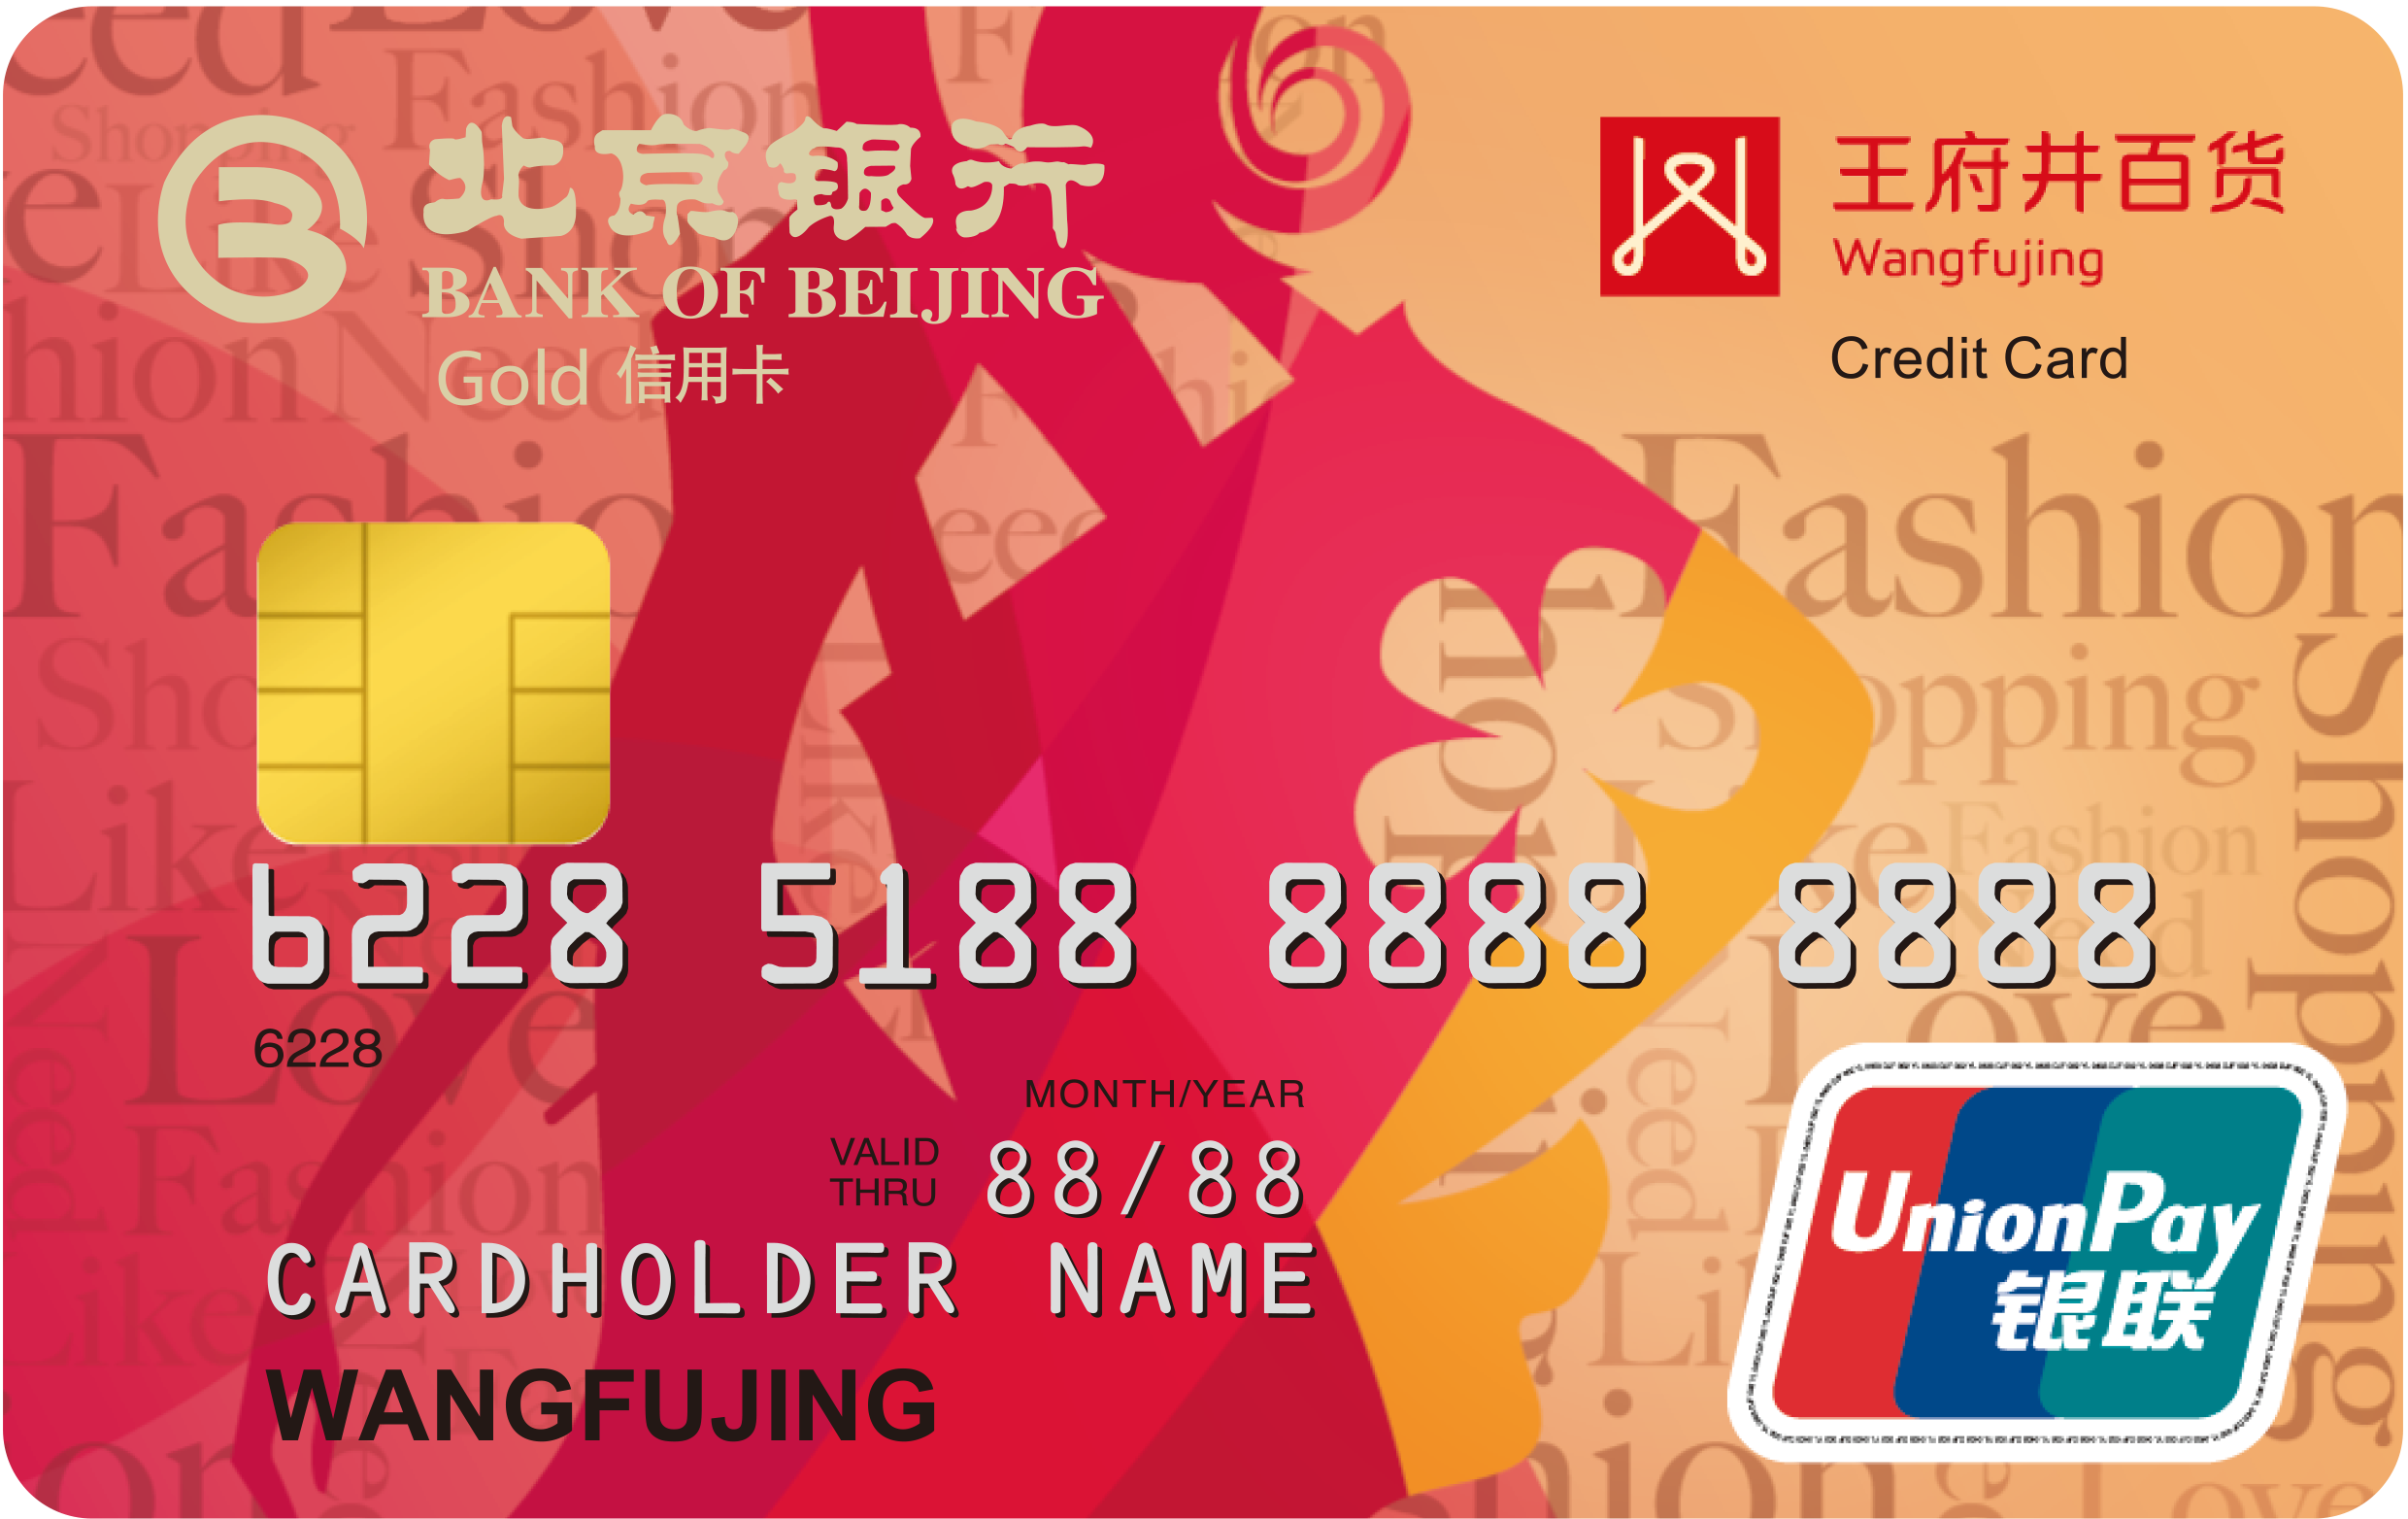 即日起至2016年6月30日,北京银行信用卡持卡人至指定酒店餐厅享用自助